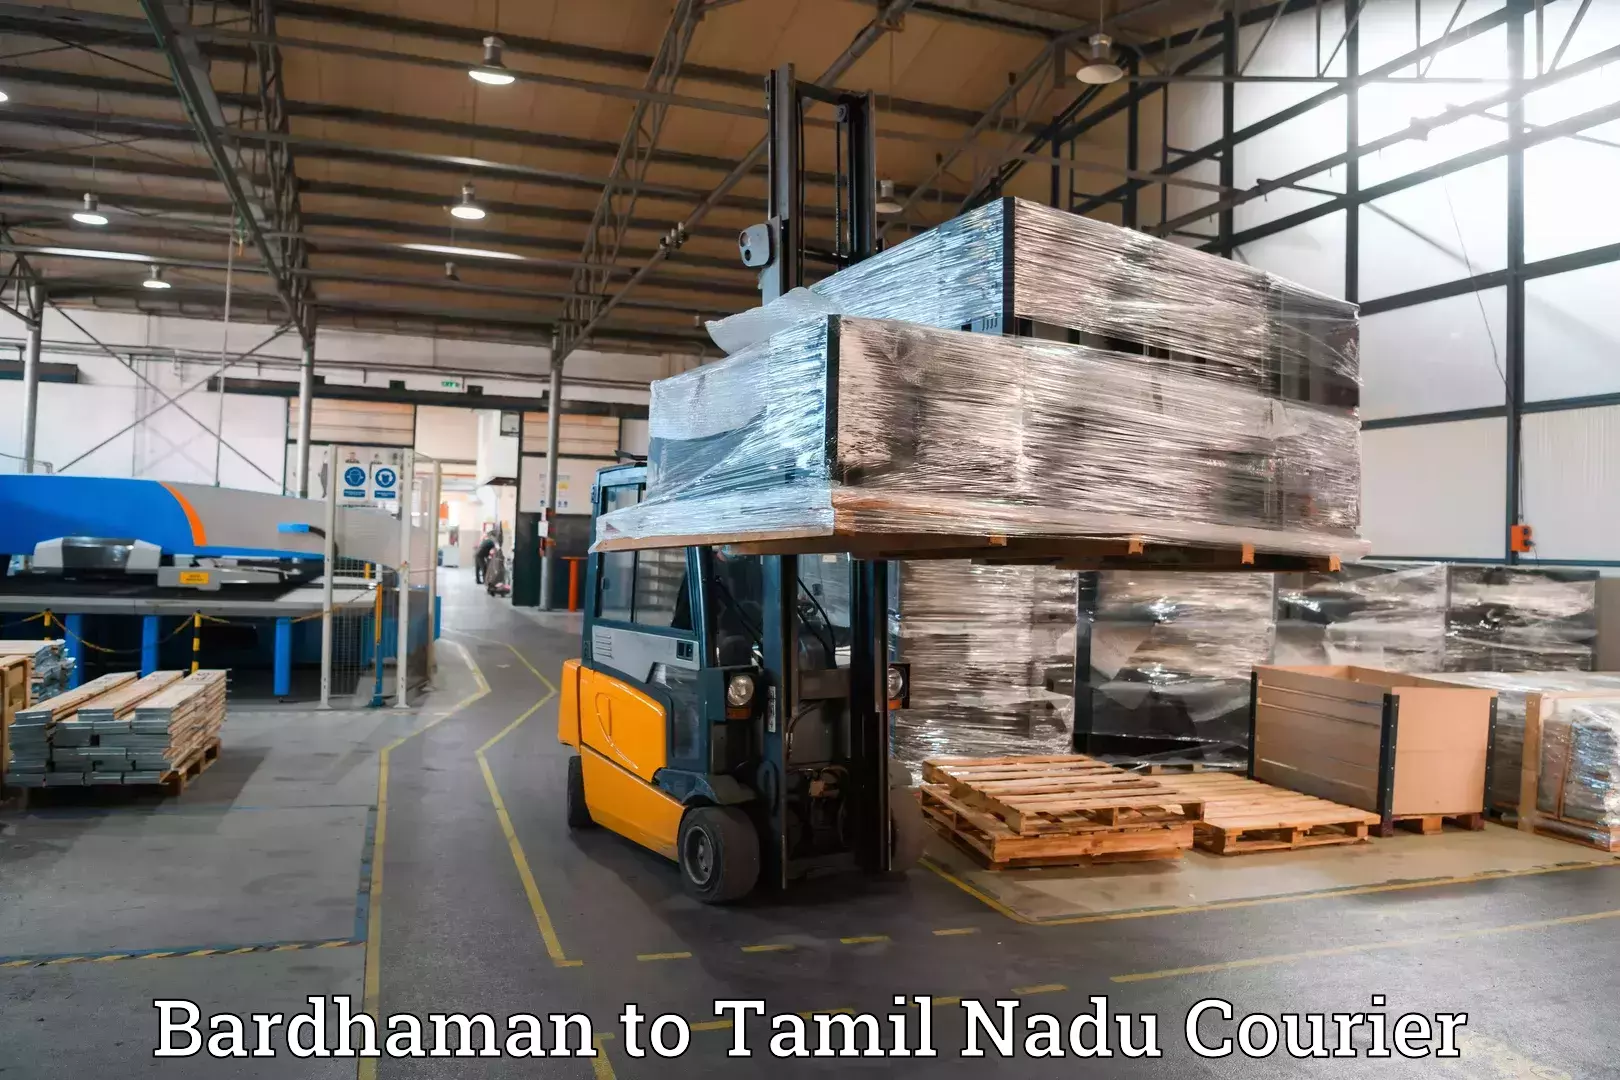 Luggage delivery providers in Bardhaman to Kumbakonam